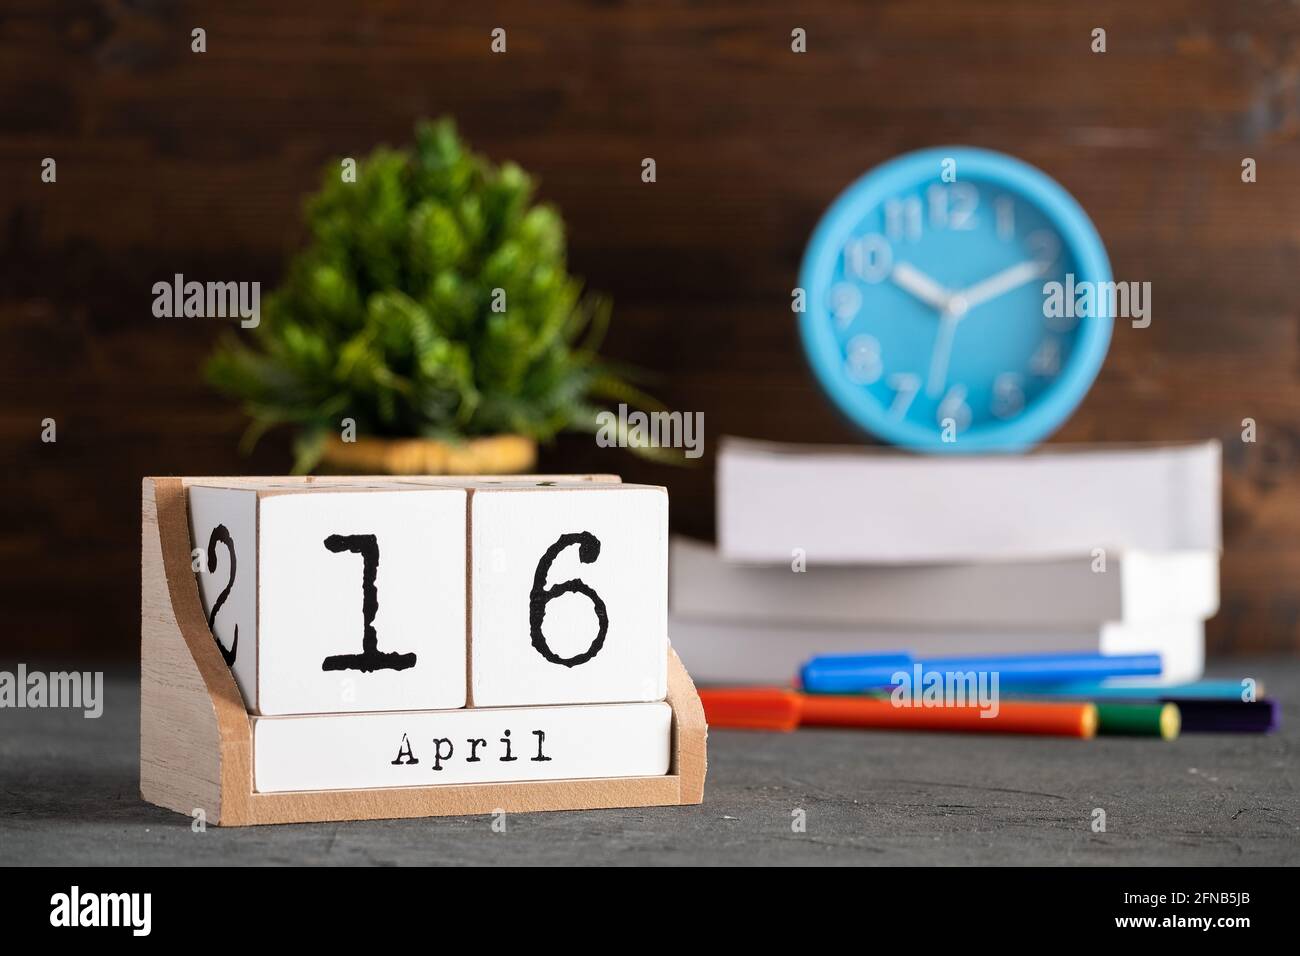 16 avril. Avril 16 calendrier cube en bois avec objets flous sur fond. Banque D'Images